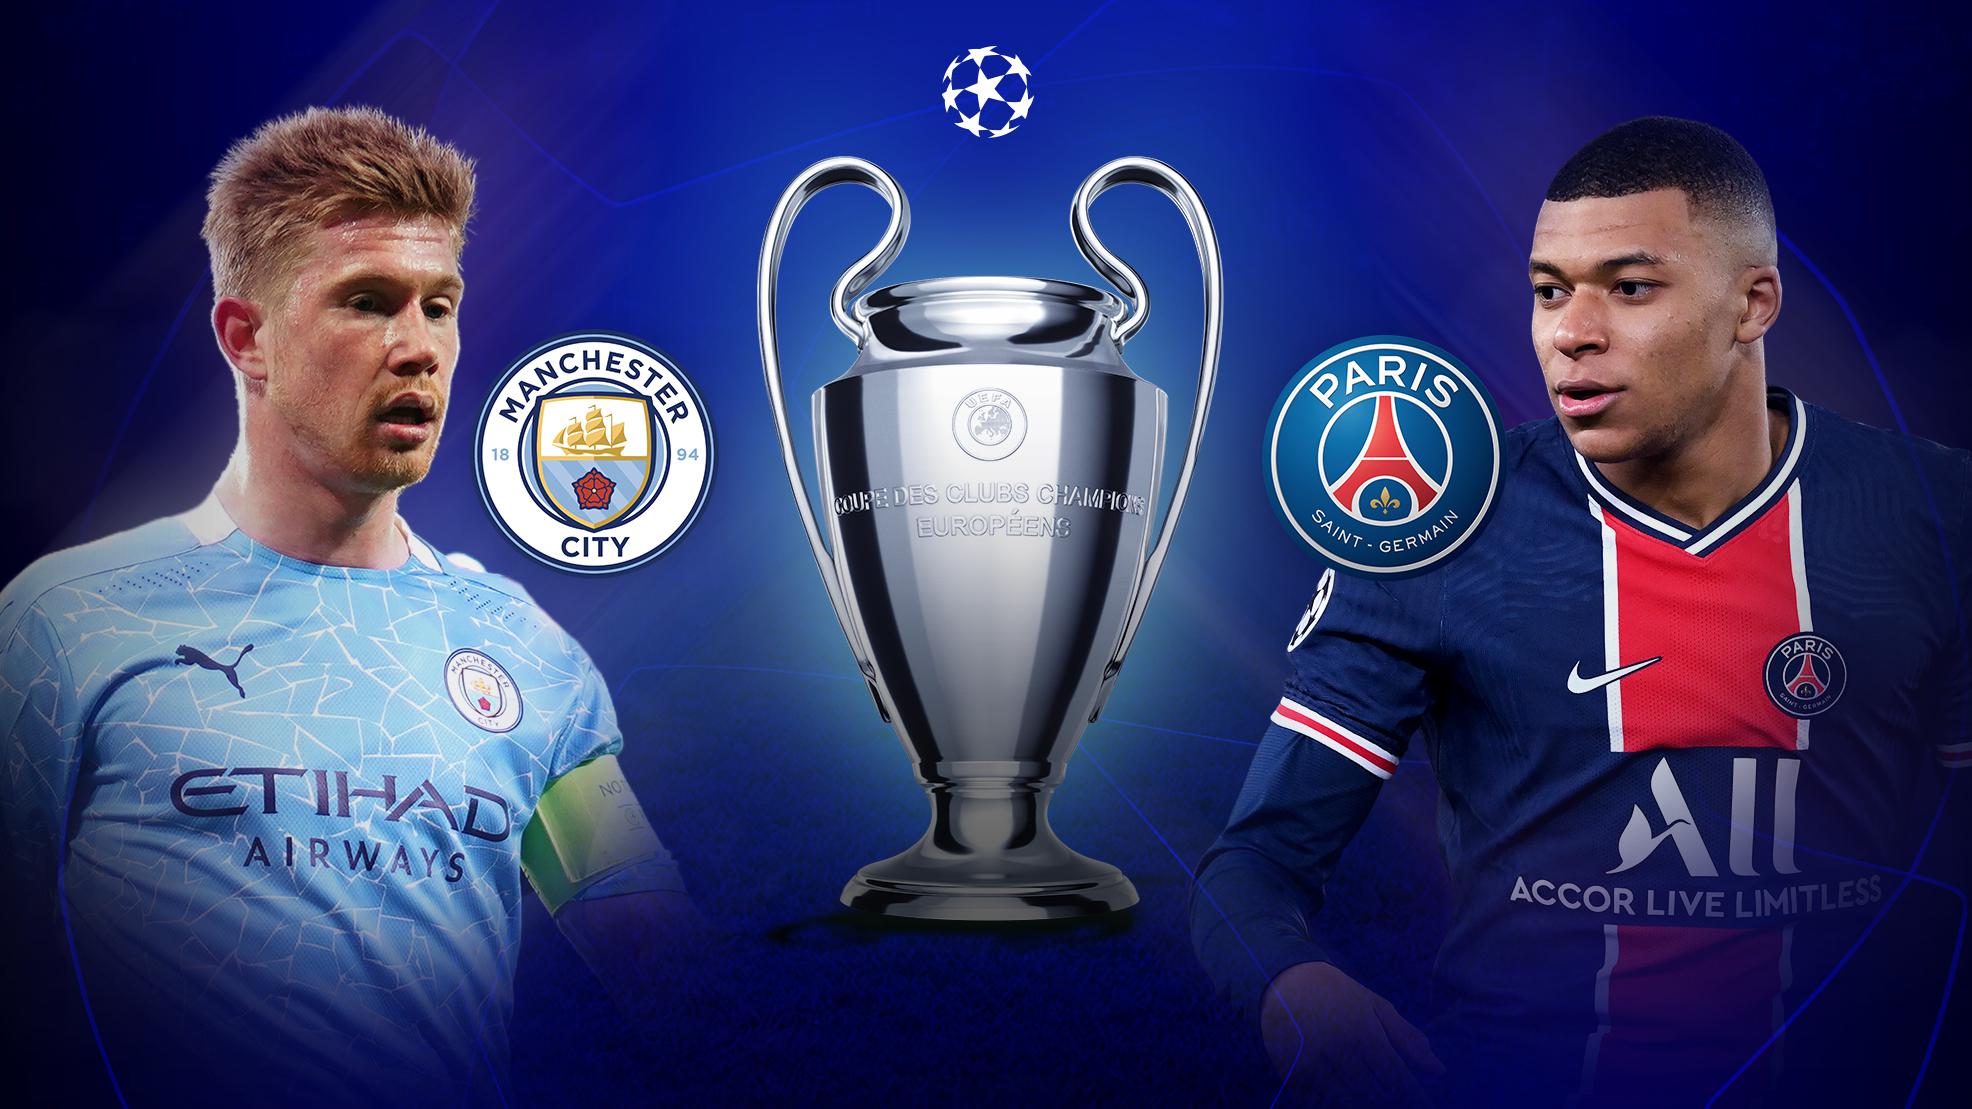 Manchester City vs Paris Saint Germain Predictions